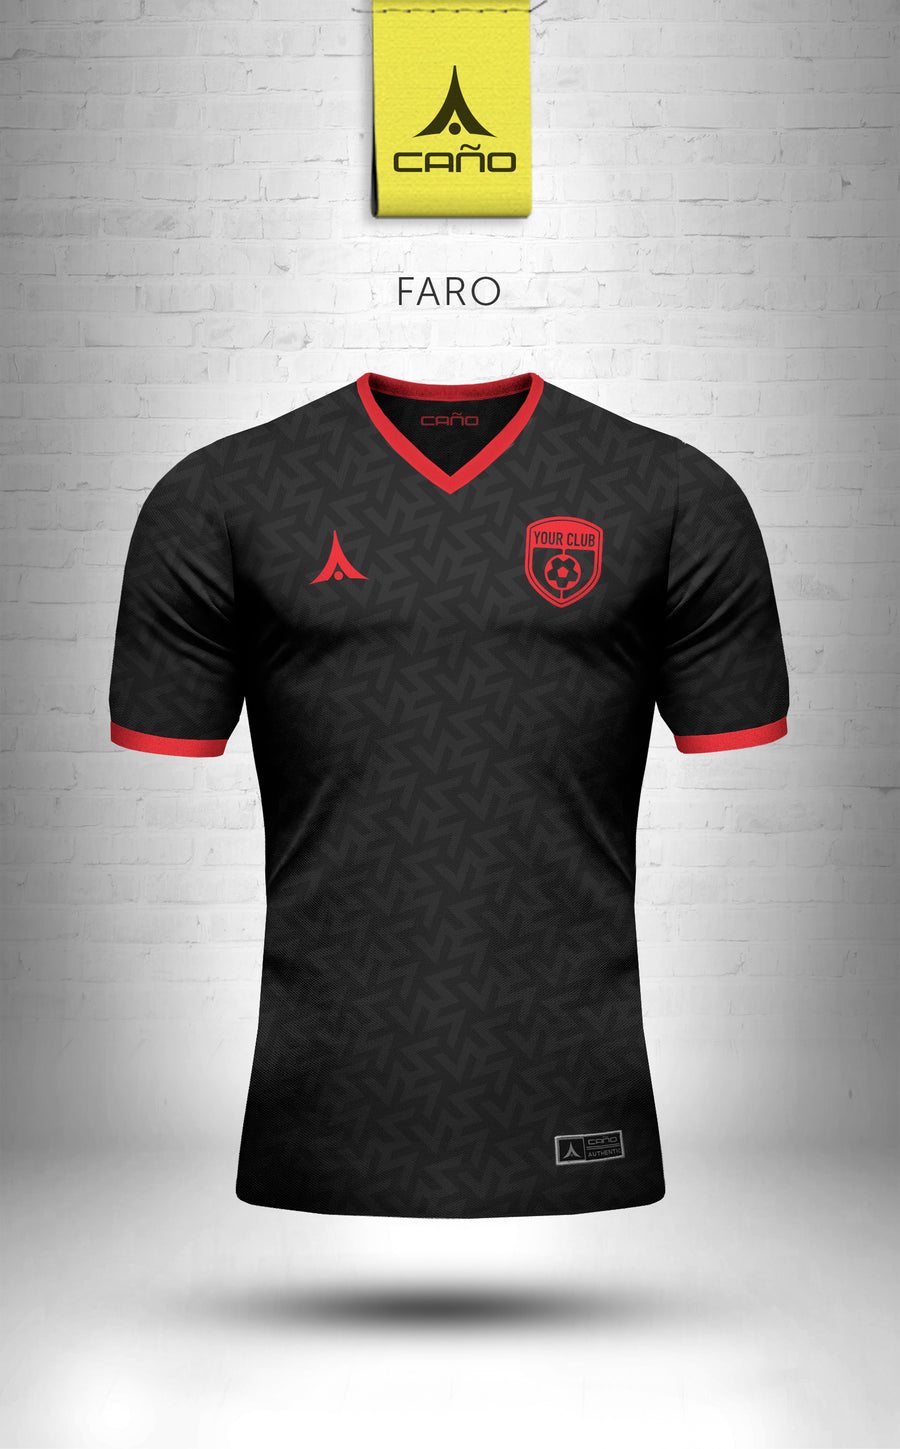 Faro in black/red